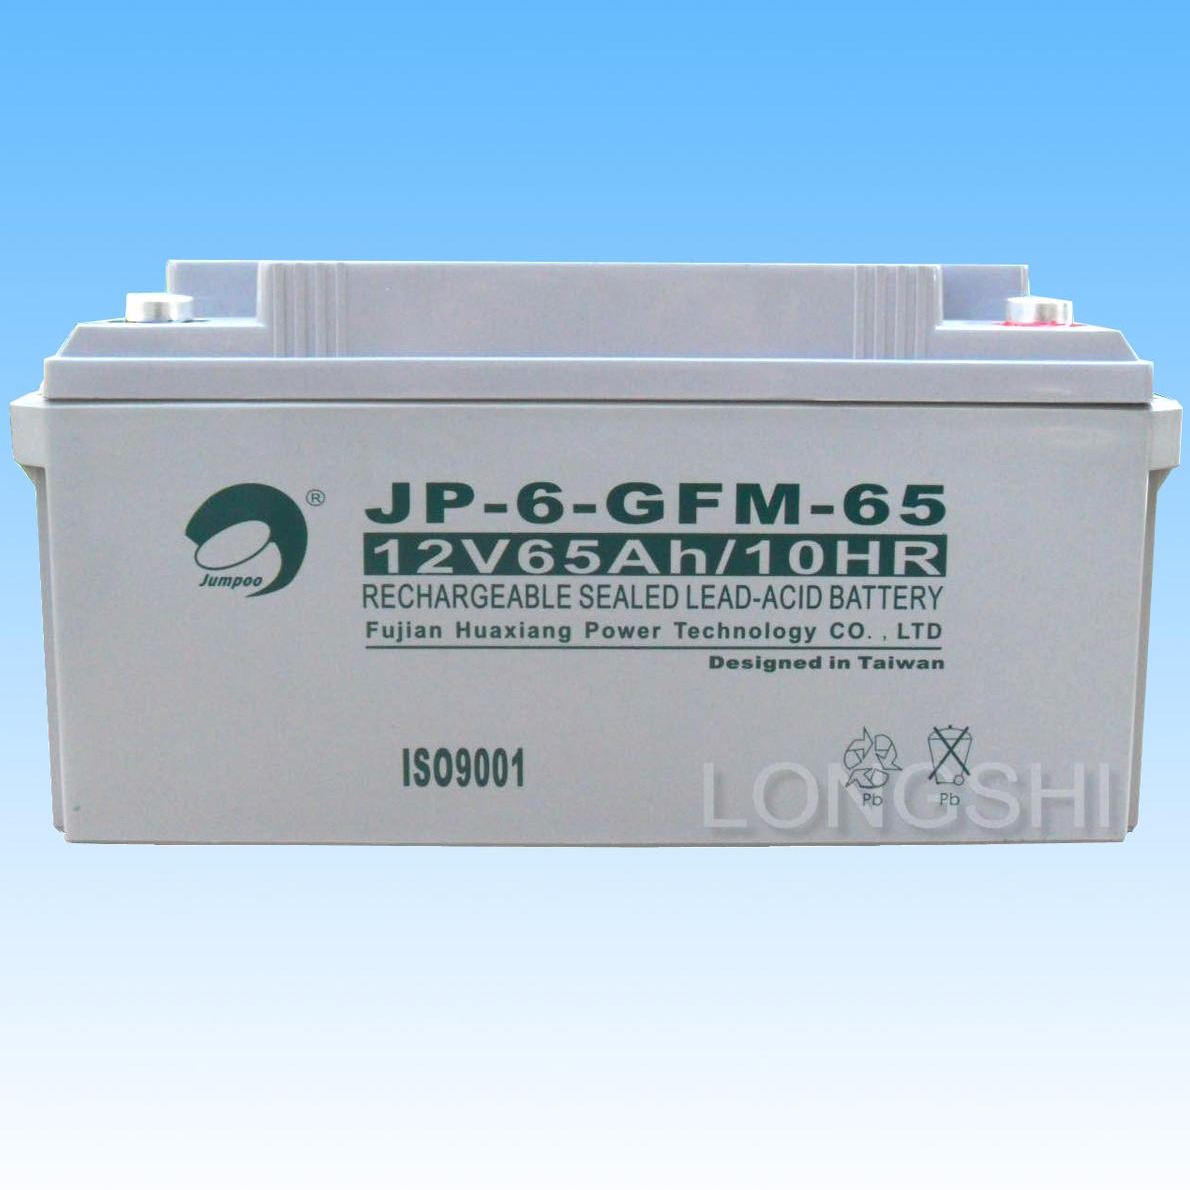 劲博蓄电池12V65AH 劲博JP-6-GFM-65 铅酸免维护蓄电池 质保三年